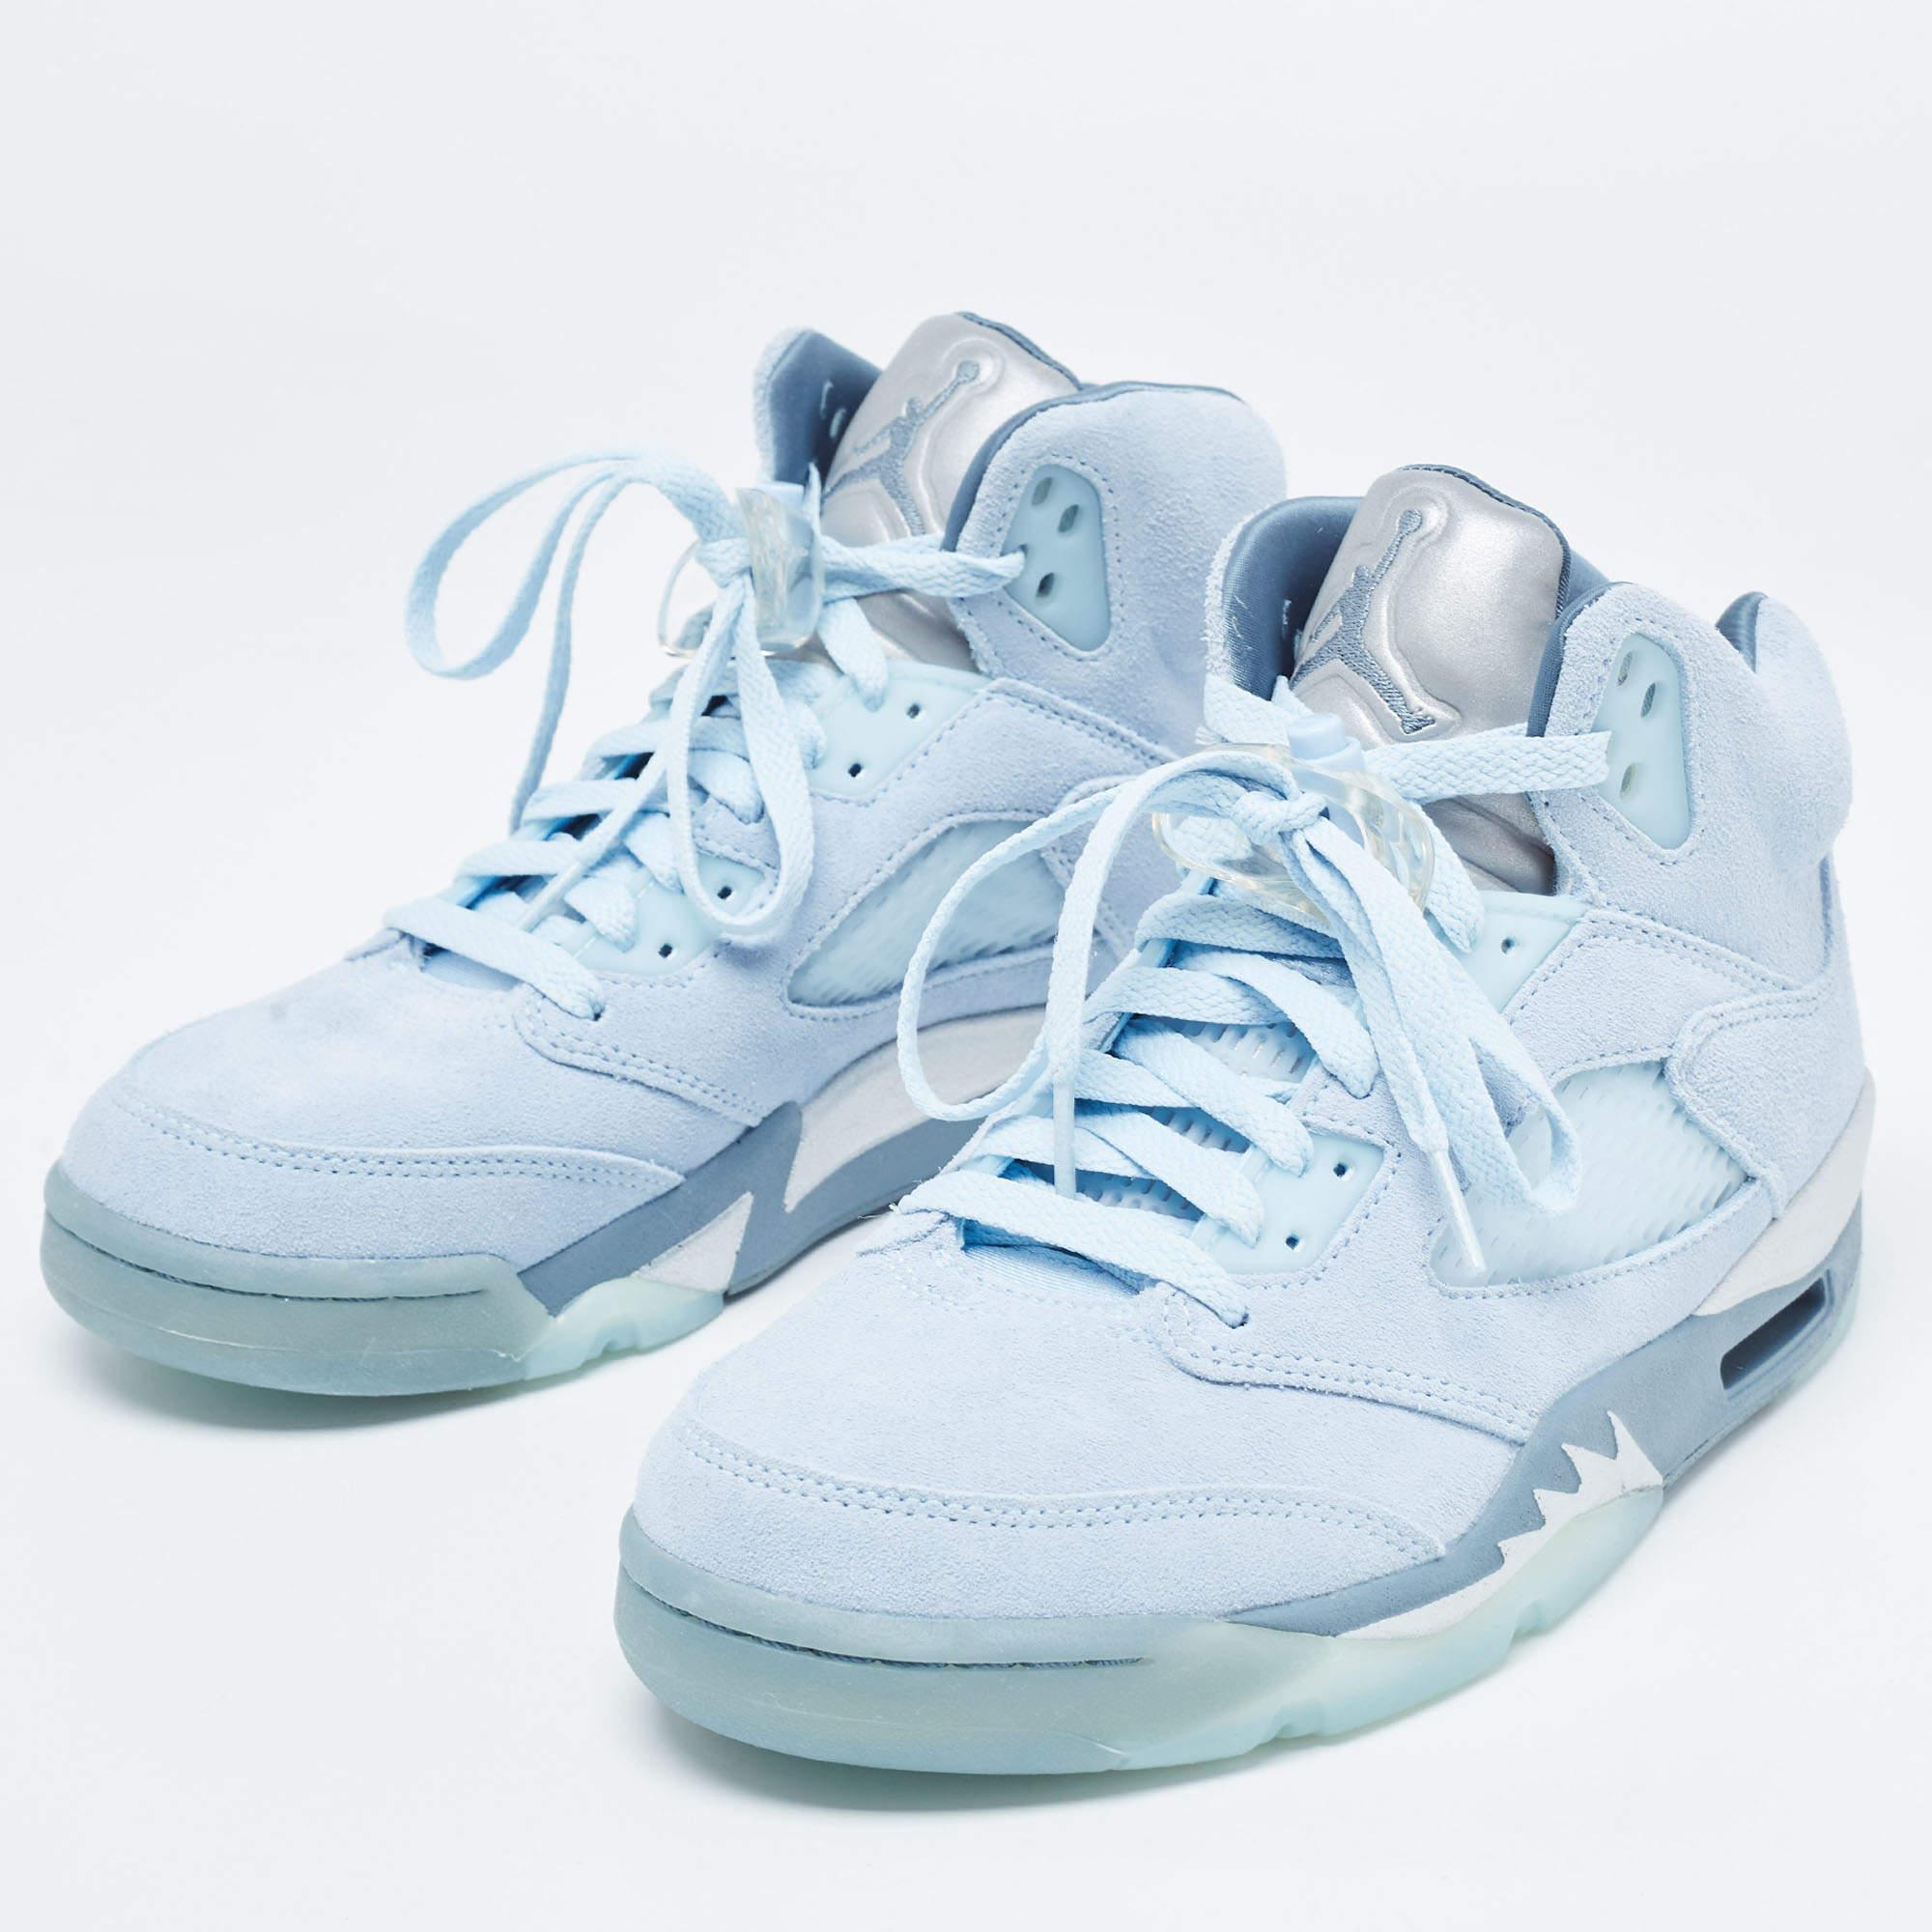 Air Jordans Blue Suede Air Jordan 1 High Top Sneakers Size 38 1